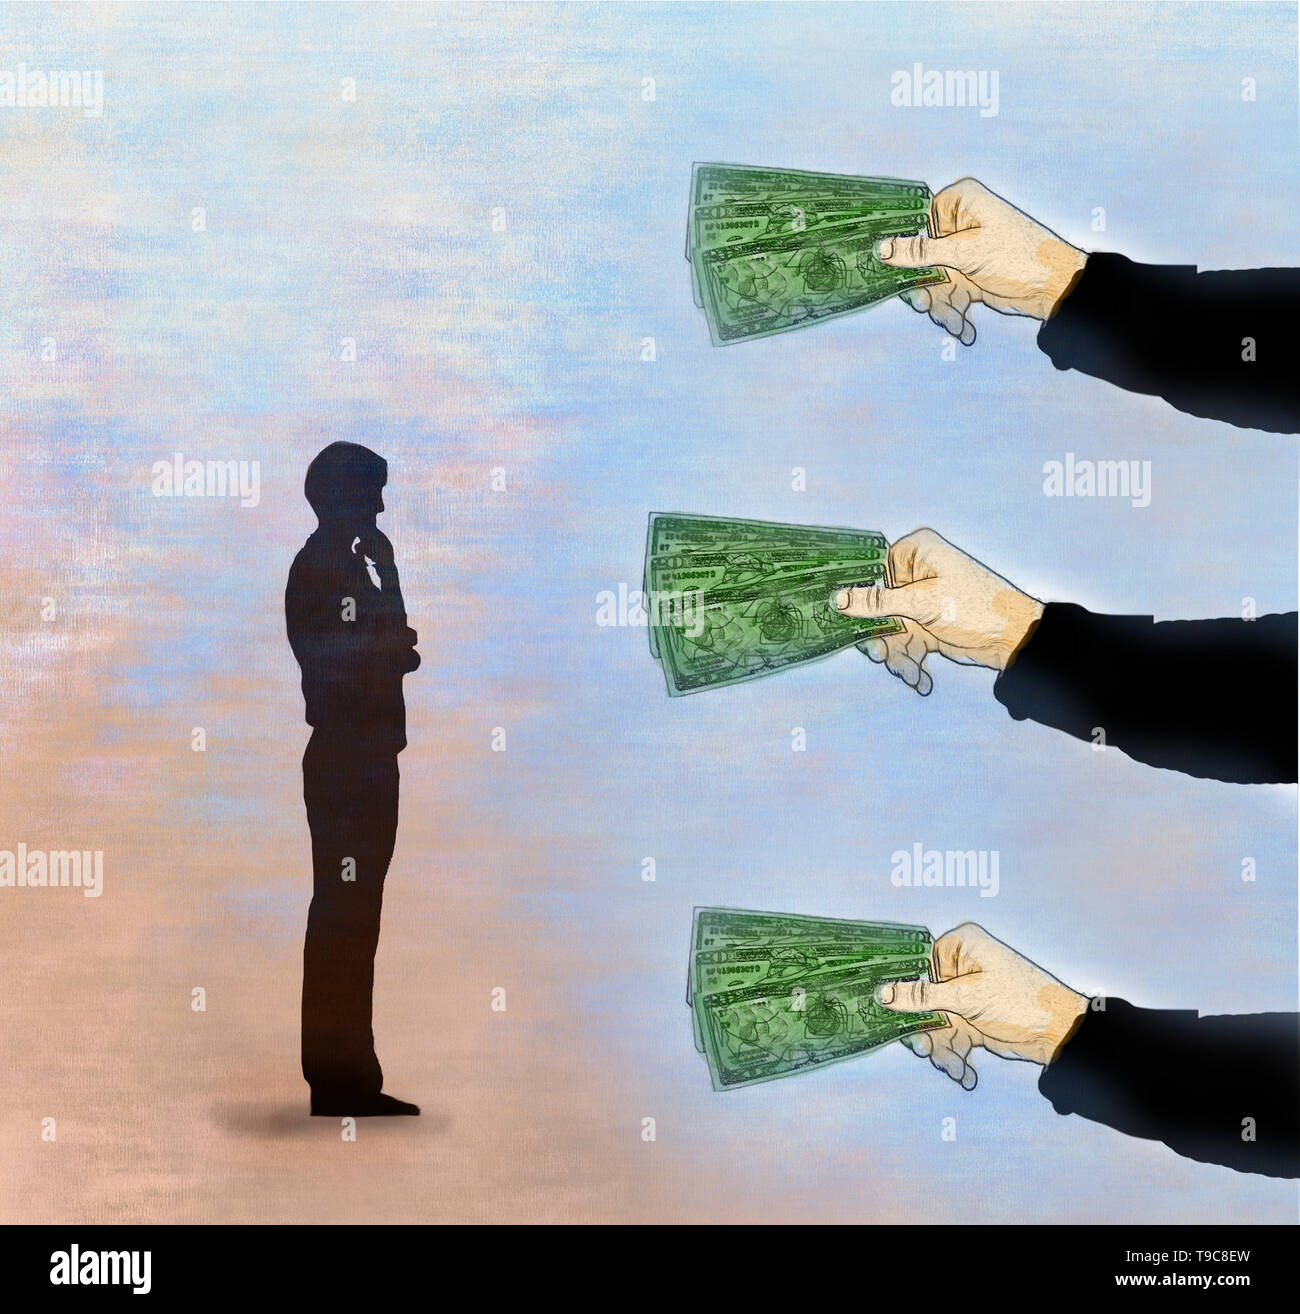 Concepto de imagen tres manos ofreciendo dinero a un hombre que está pensando representando la adopción de decisiones financieras Foto de stock